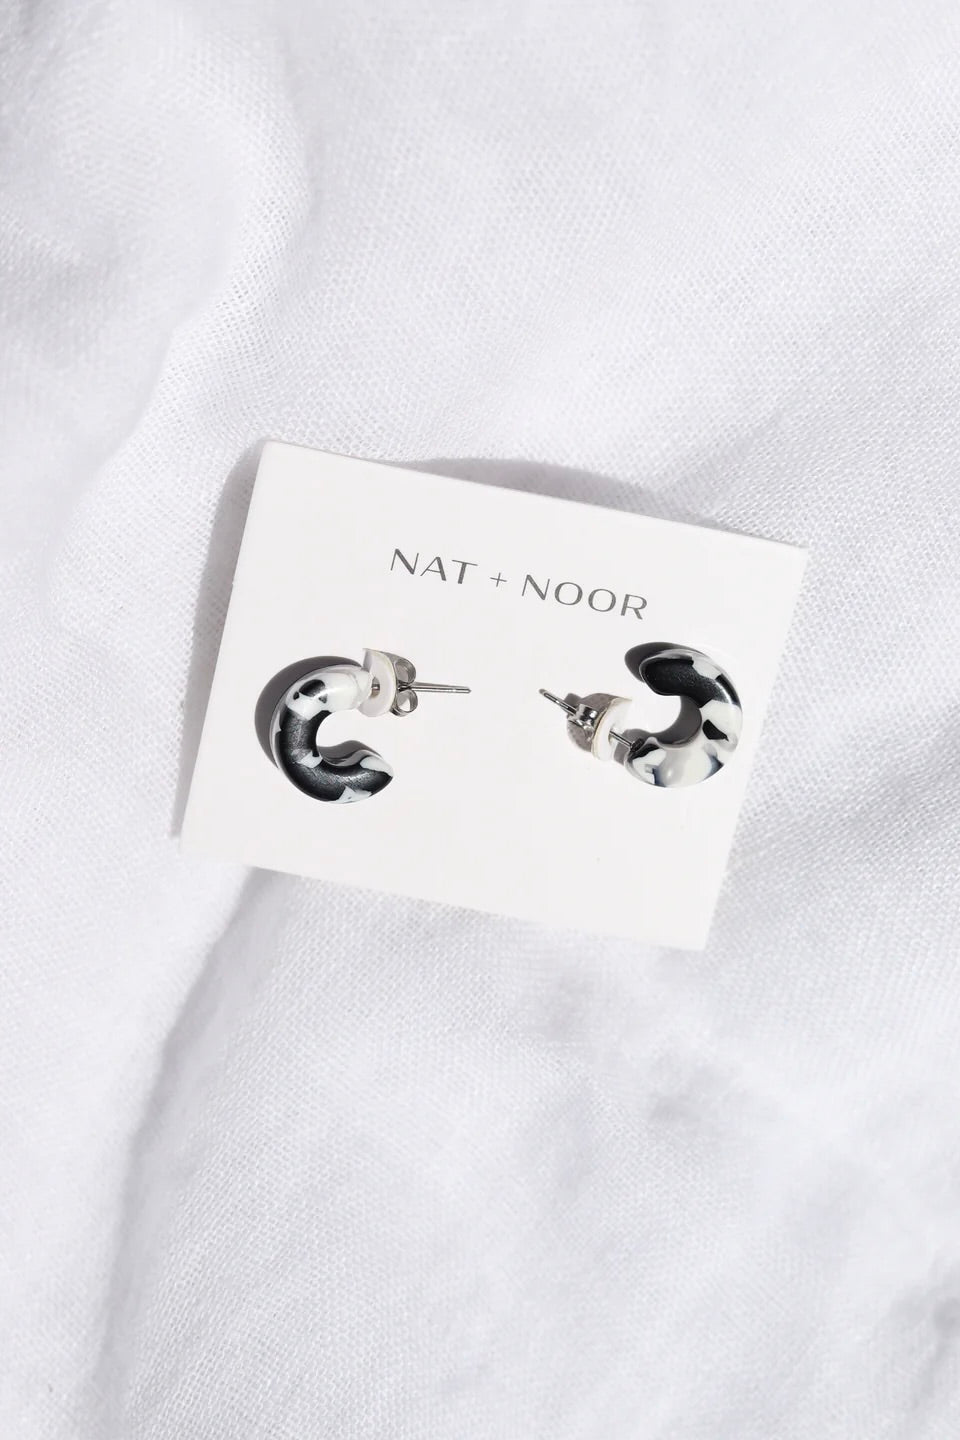 Nat + Noor Mali Hoops / Black + White